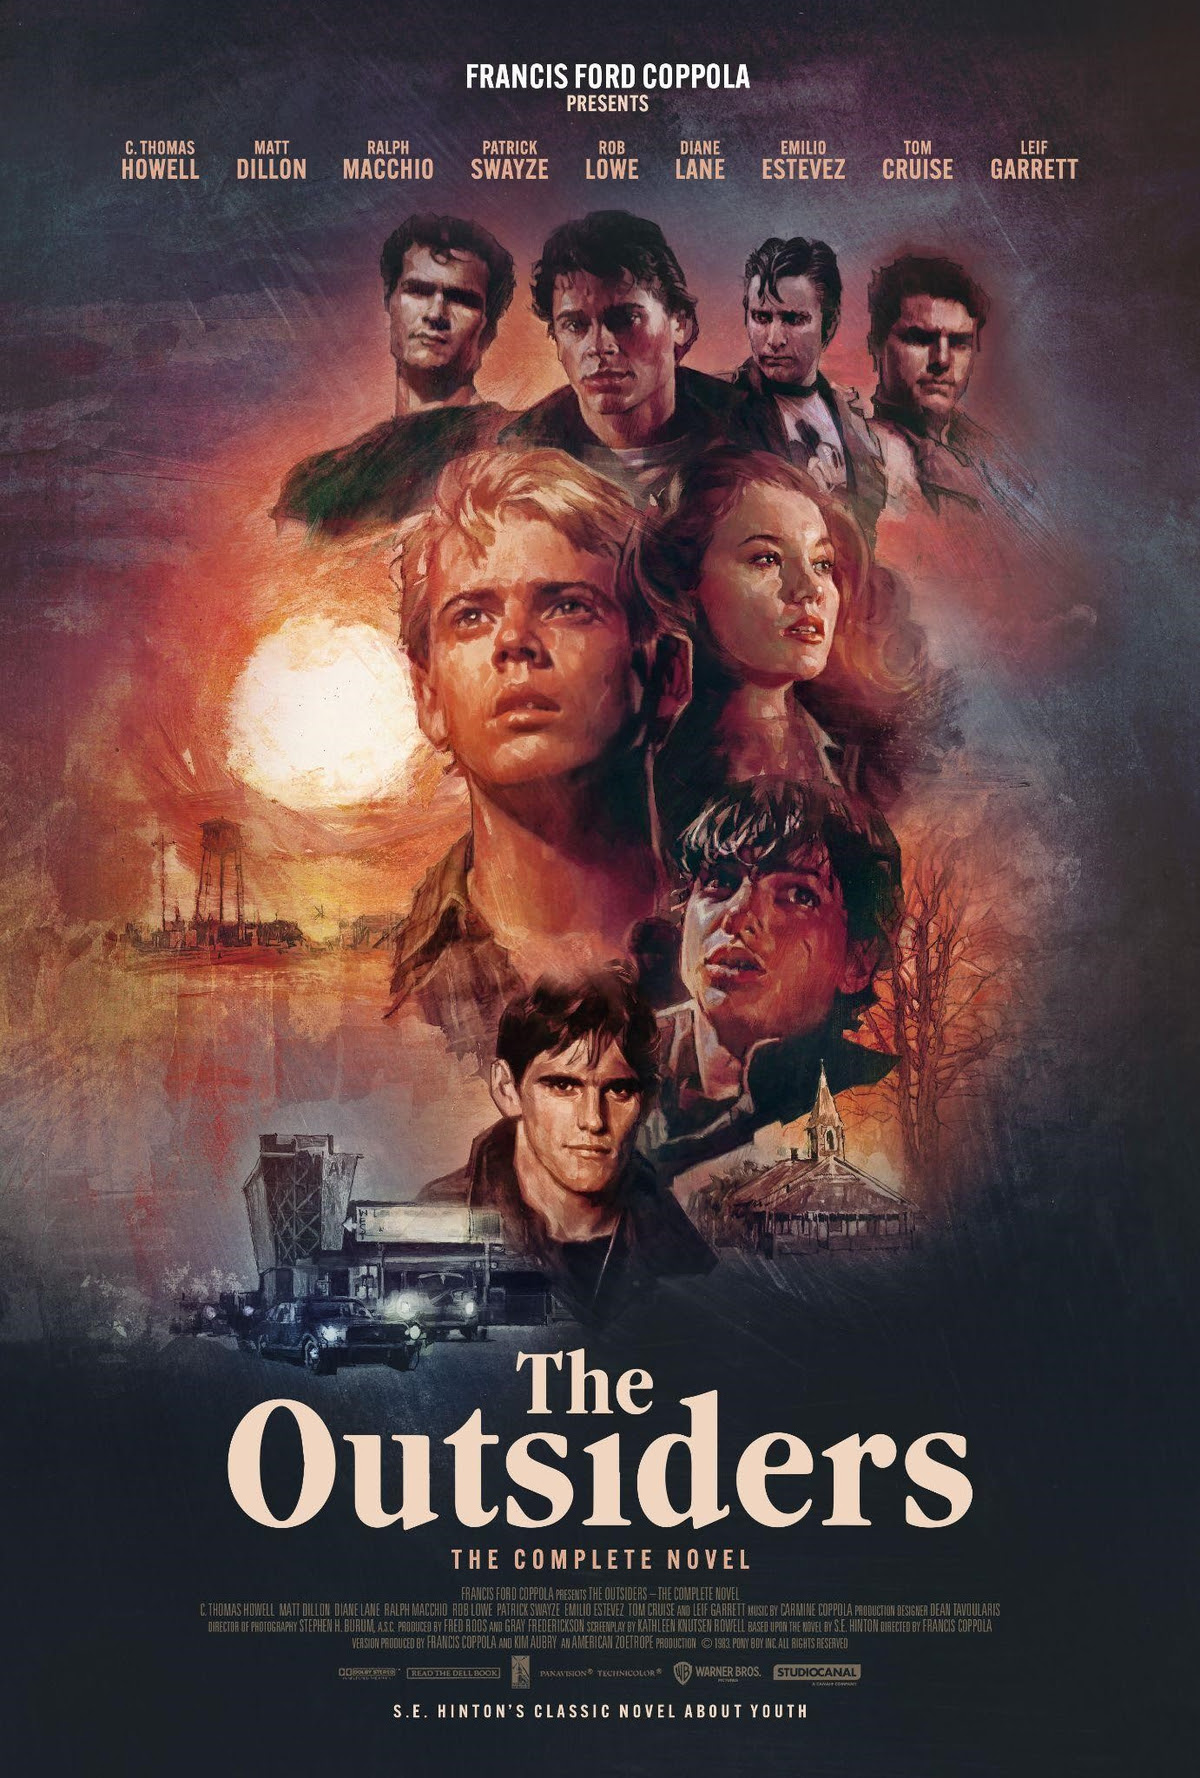 Film Kritik: "The Outsiders"- 4k ist den Kinobesuch am 02. November wert